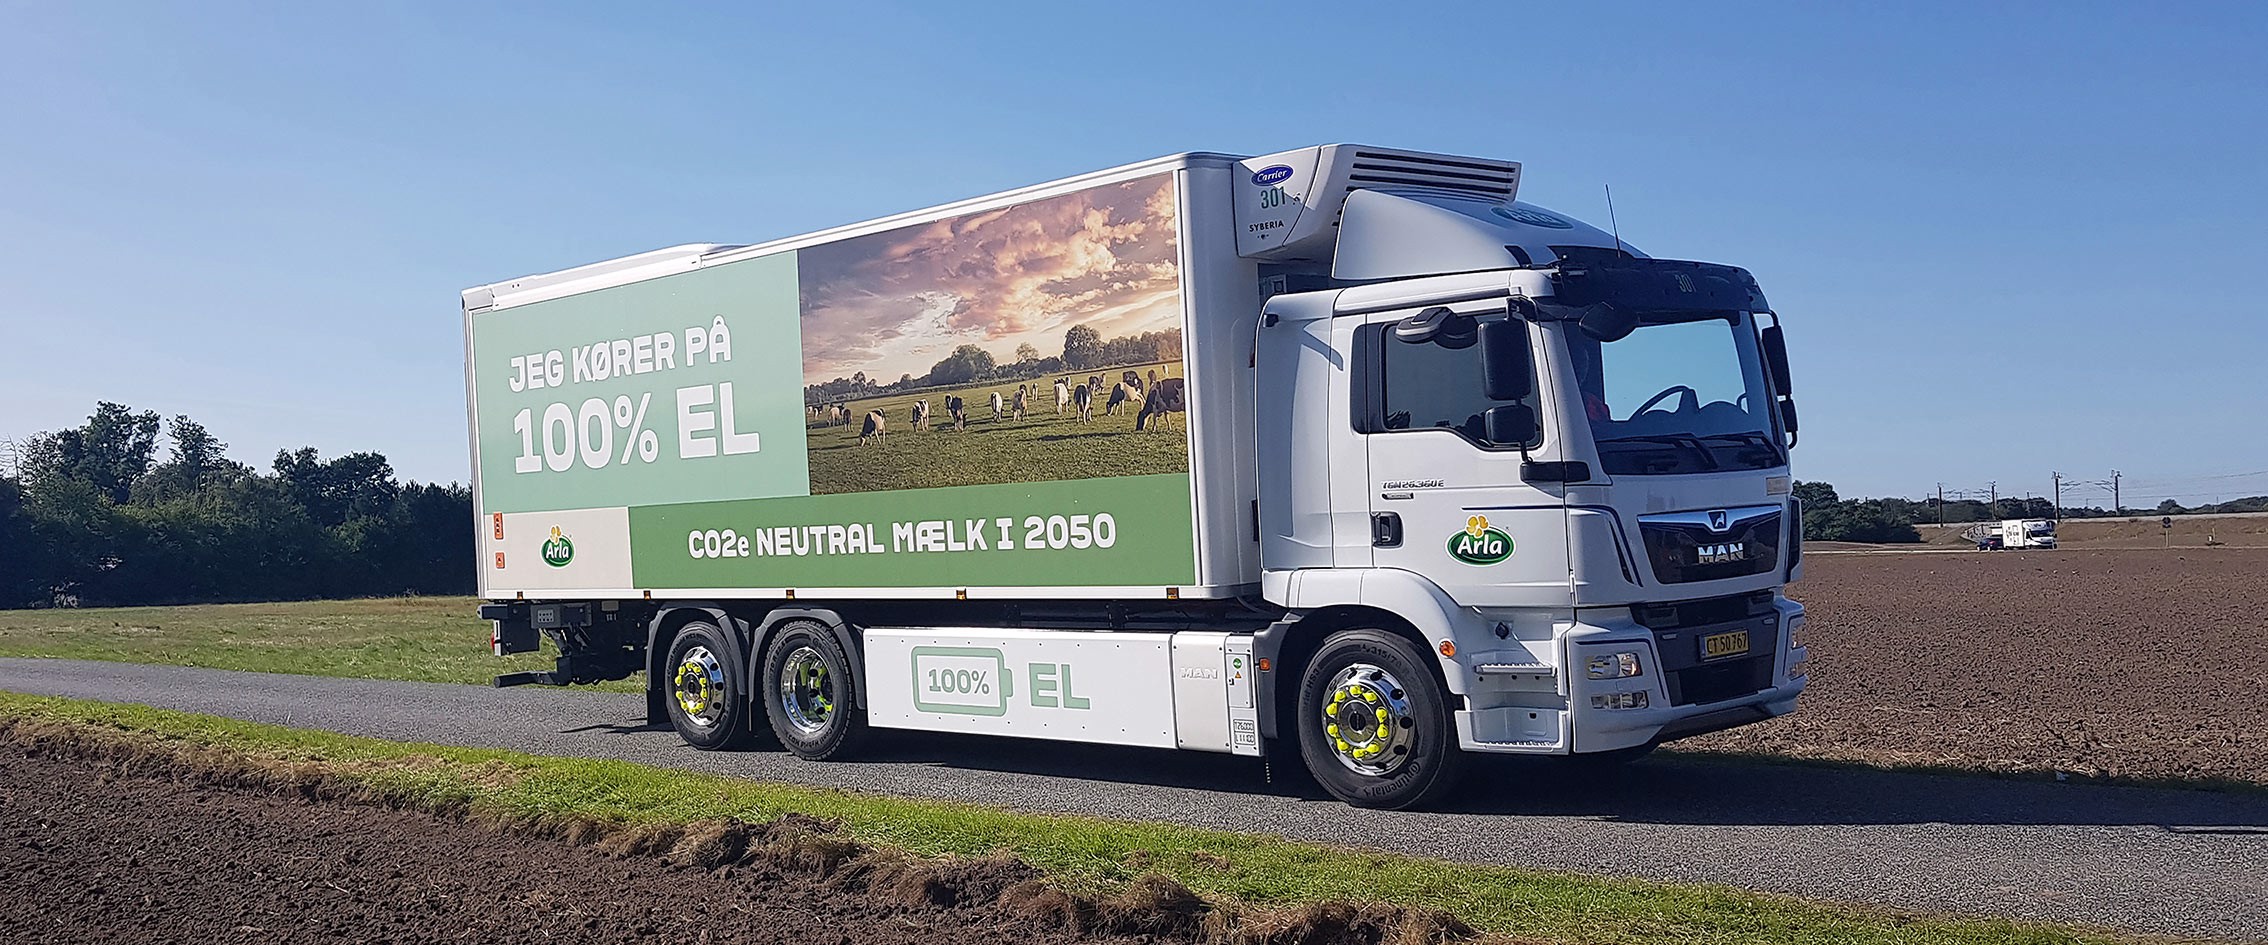 Hvordan bliver lastbiler bæredygtige?